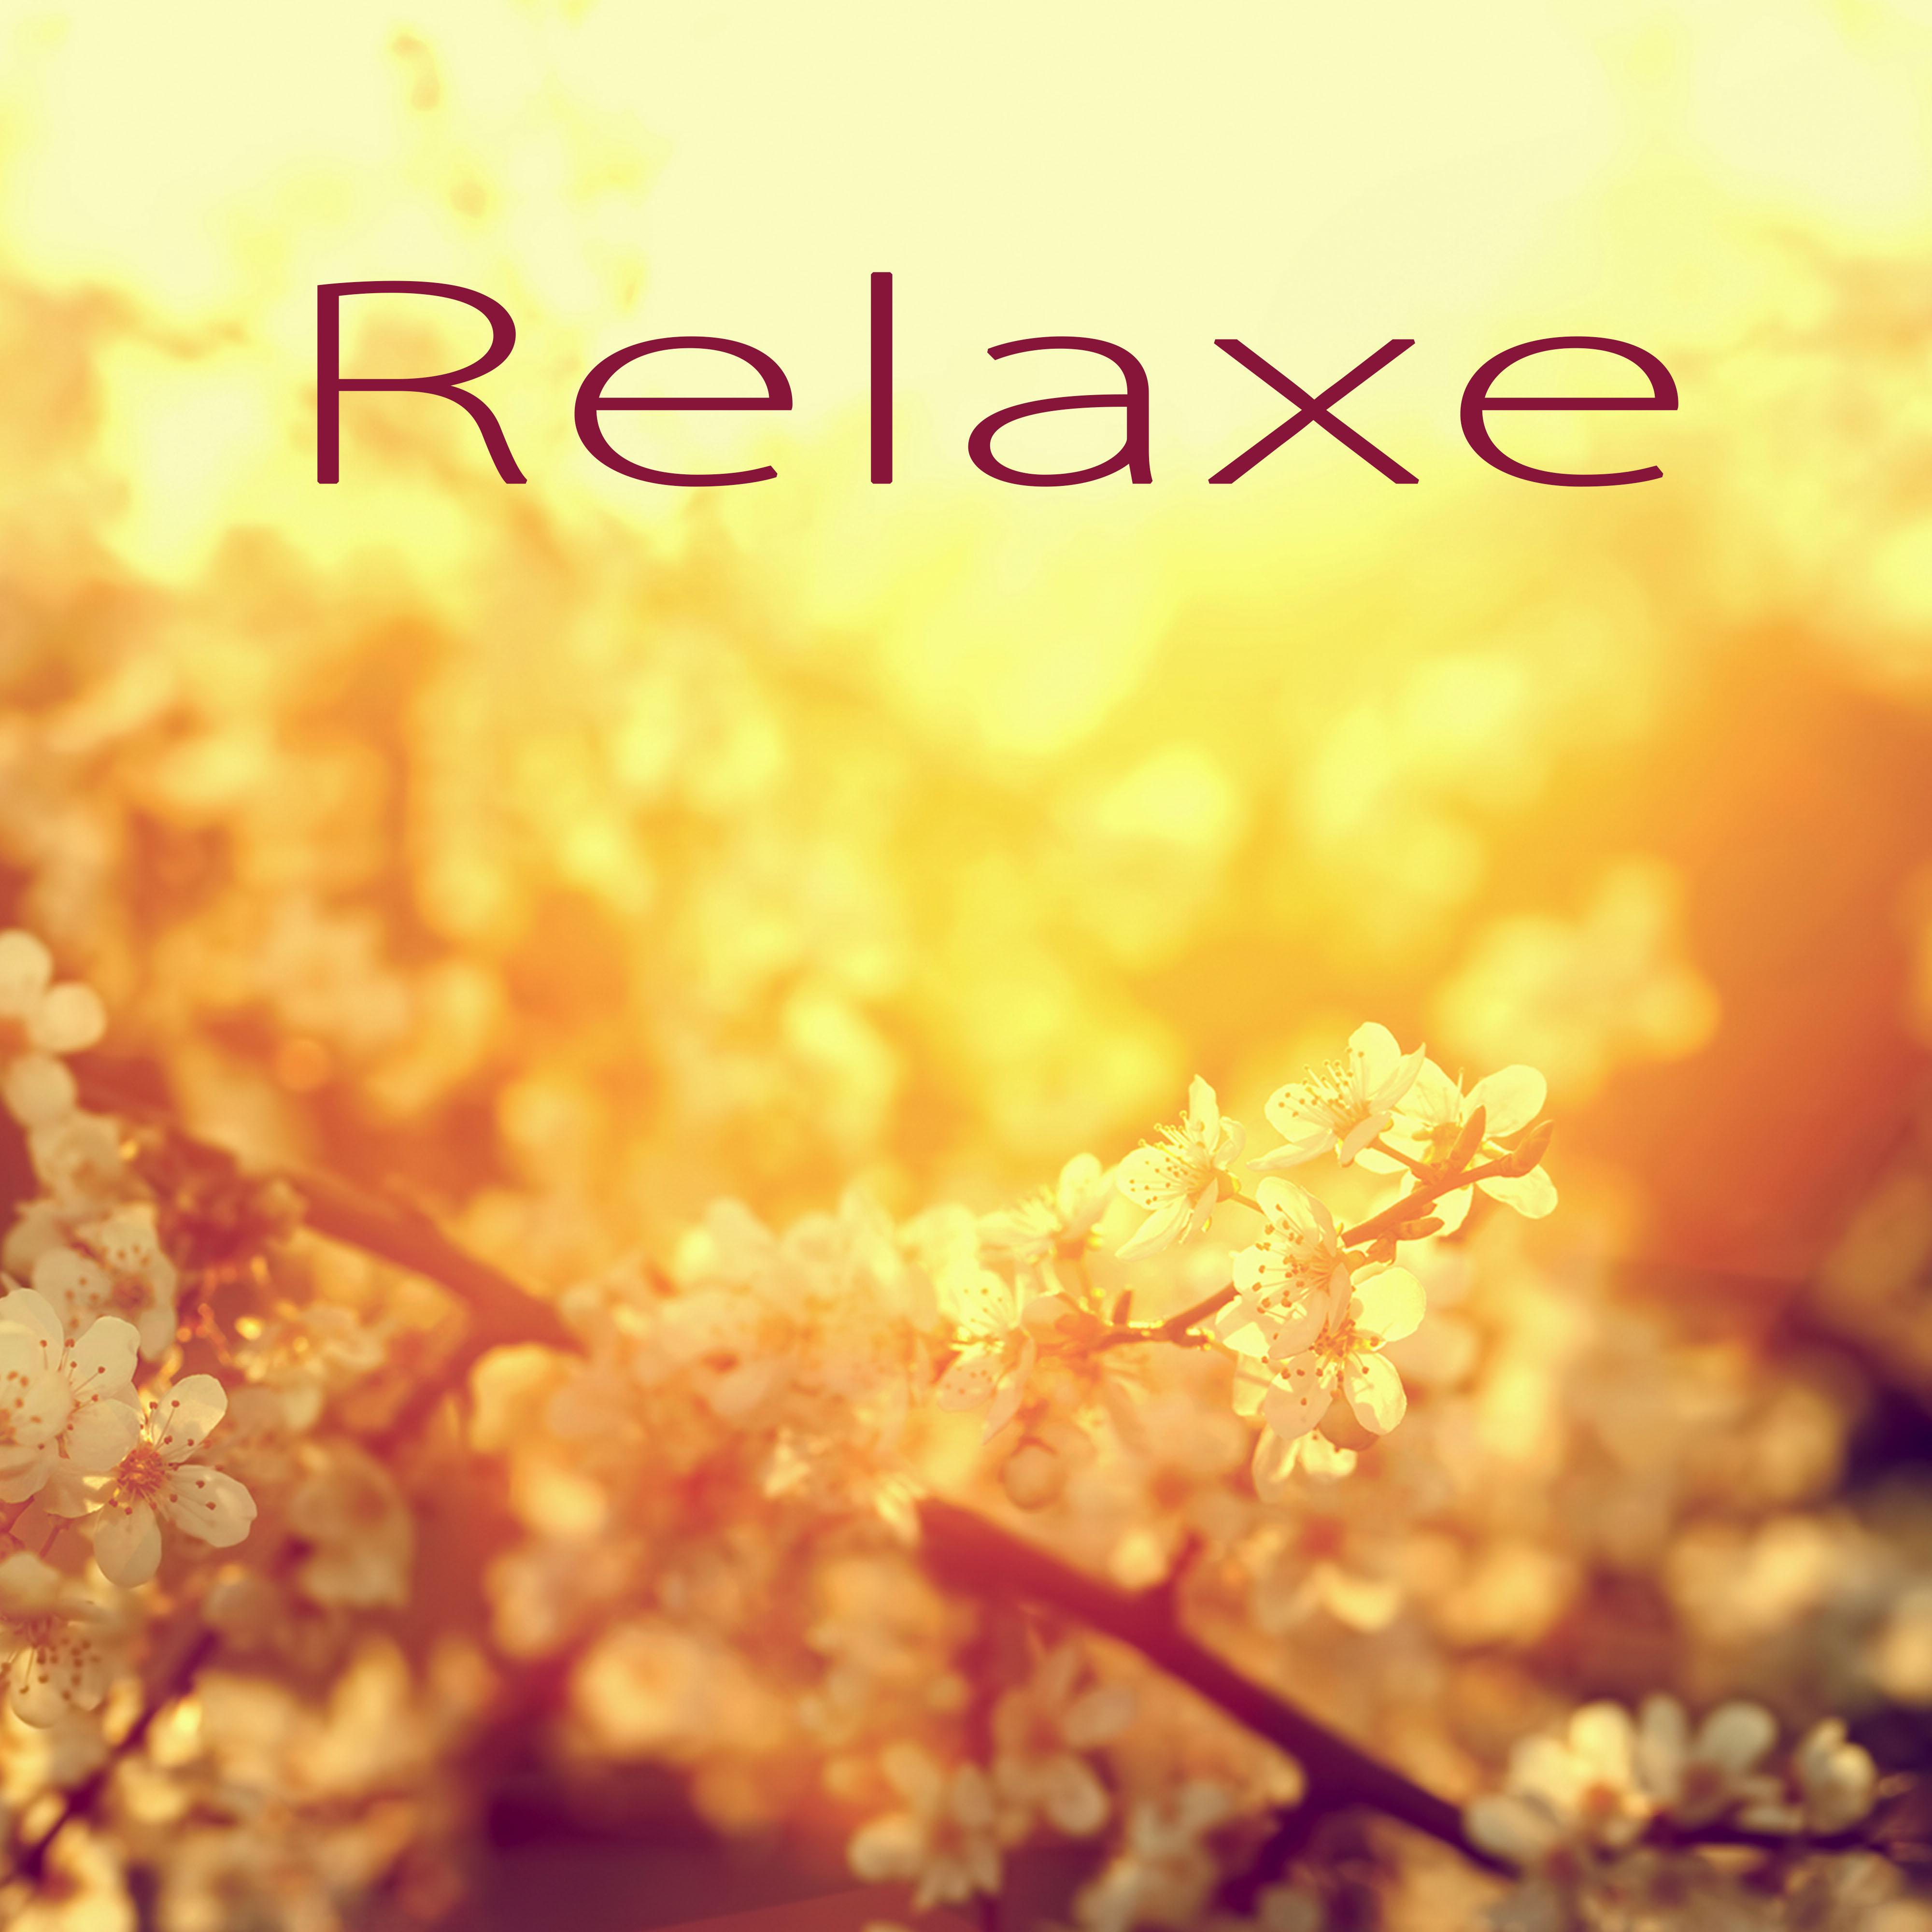 Relaxe - Relaxar a Mente con Musica New Age, Músicas Instrumentais para Meditação, Pensamento Positivo, Bem Estar e Serenidade